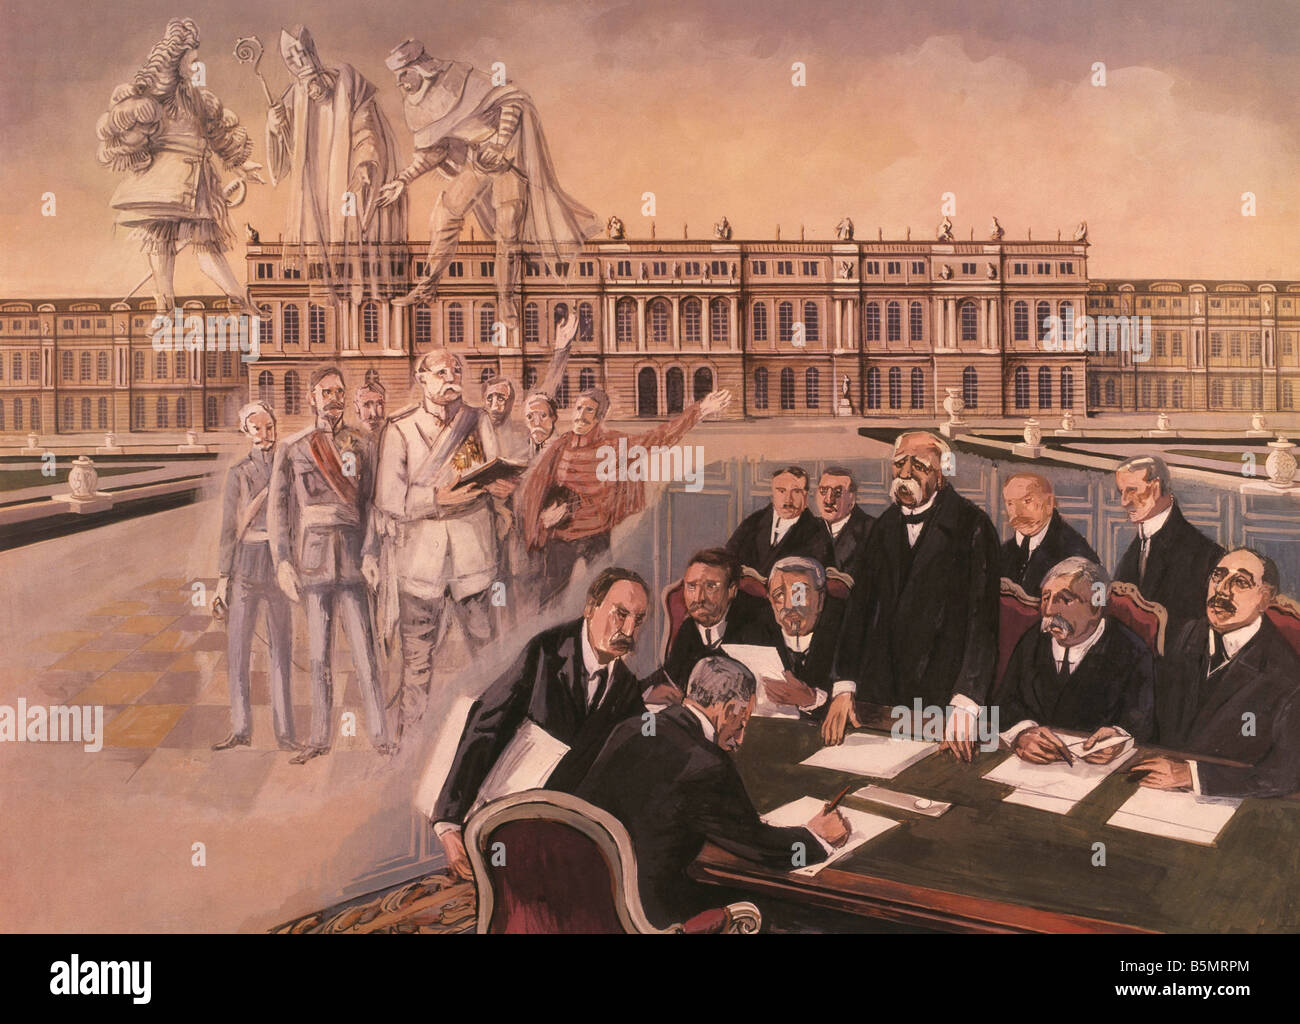 9 1919 6 28 A1 4 e Trattato di Versailles Scuola immagine Trattato di Versailles la firma del trattato di Versailles il 28 giugno 1919 Versai Foto Stock